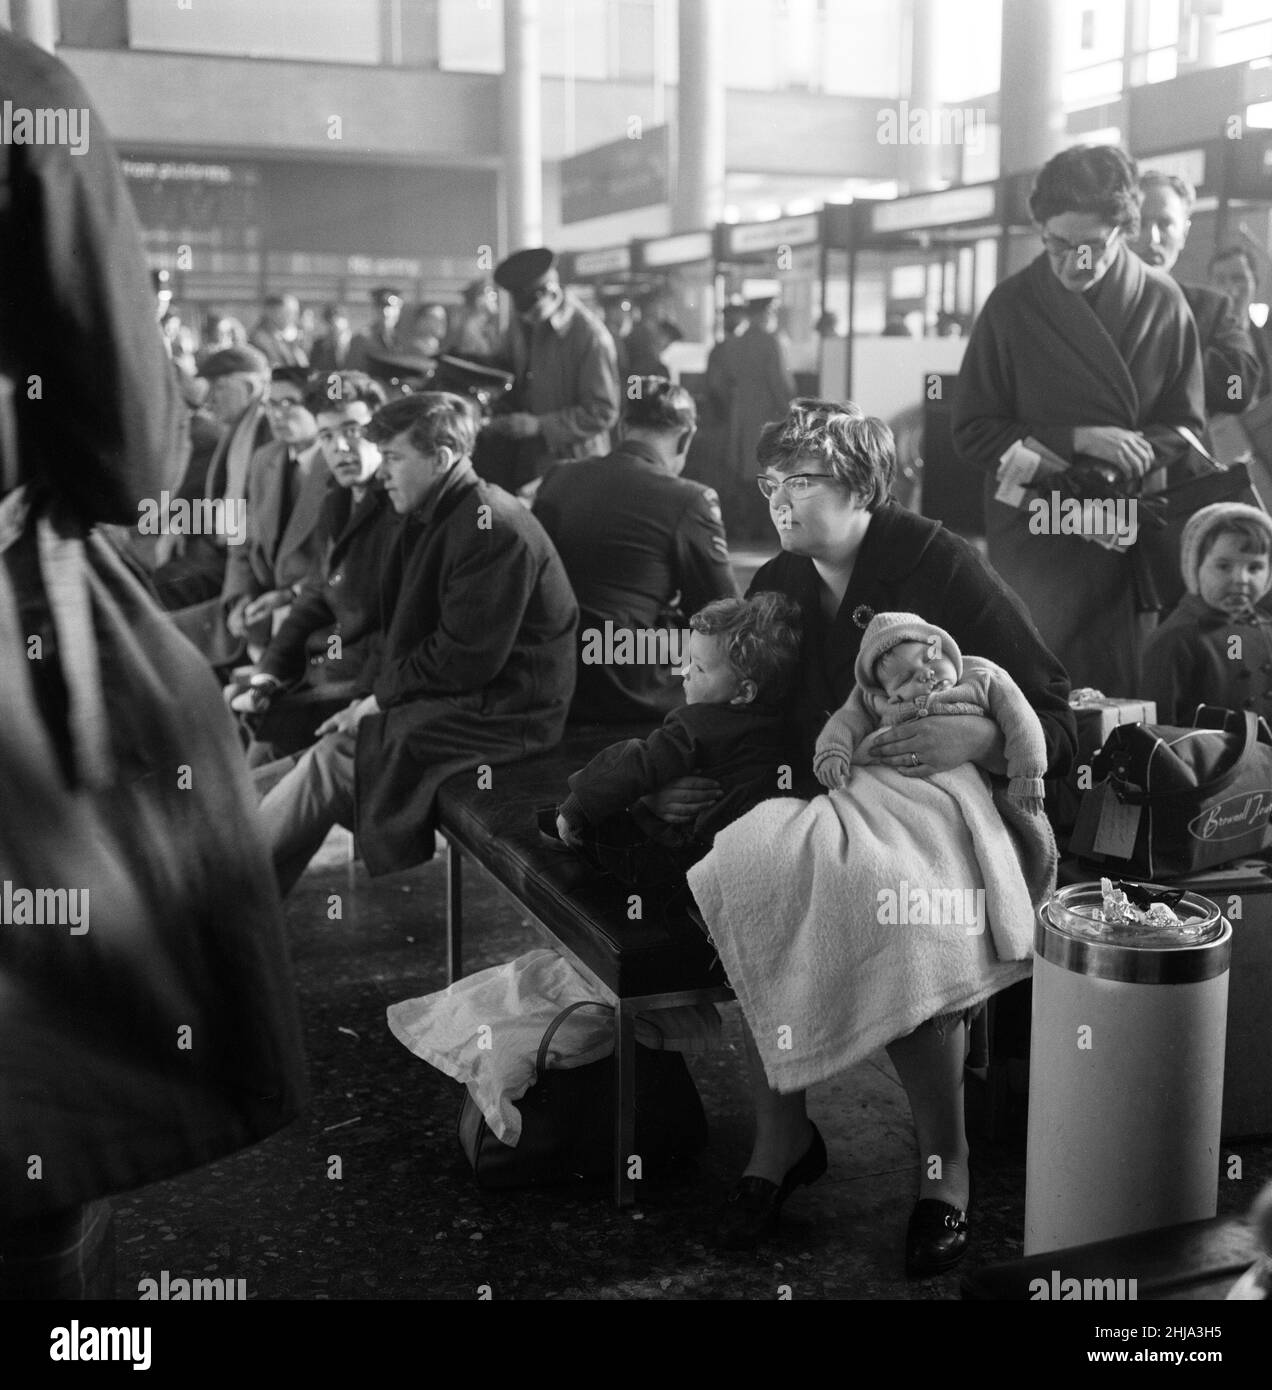 Es ist ein langes Warten auf Flugzeuge am Flughafen Gatwick, aufgrund von Nebel, dem einzigen für die Flugzeuge in London geöffneten Flugplatz, wuchs die Schlange den ganzen Tag lang. 6th. Dezember 1962. Stockfoto